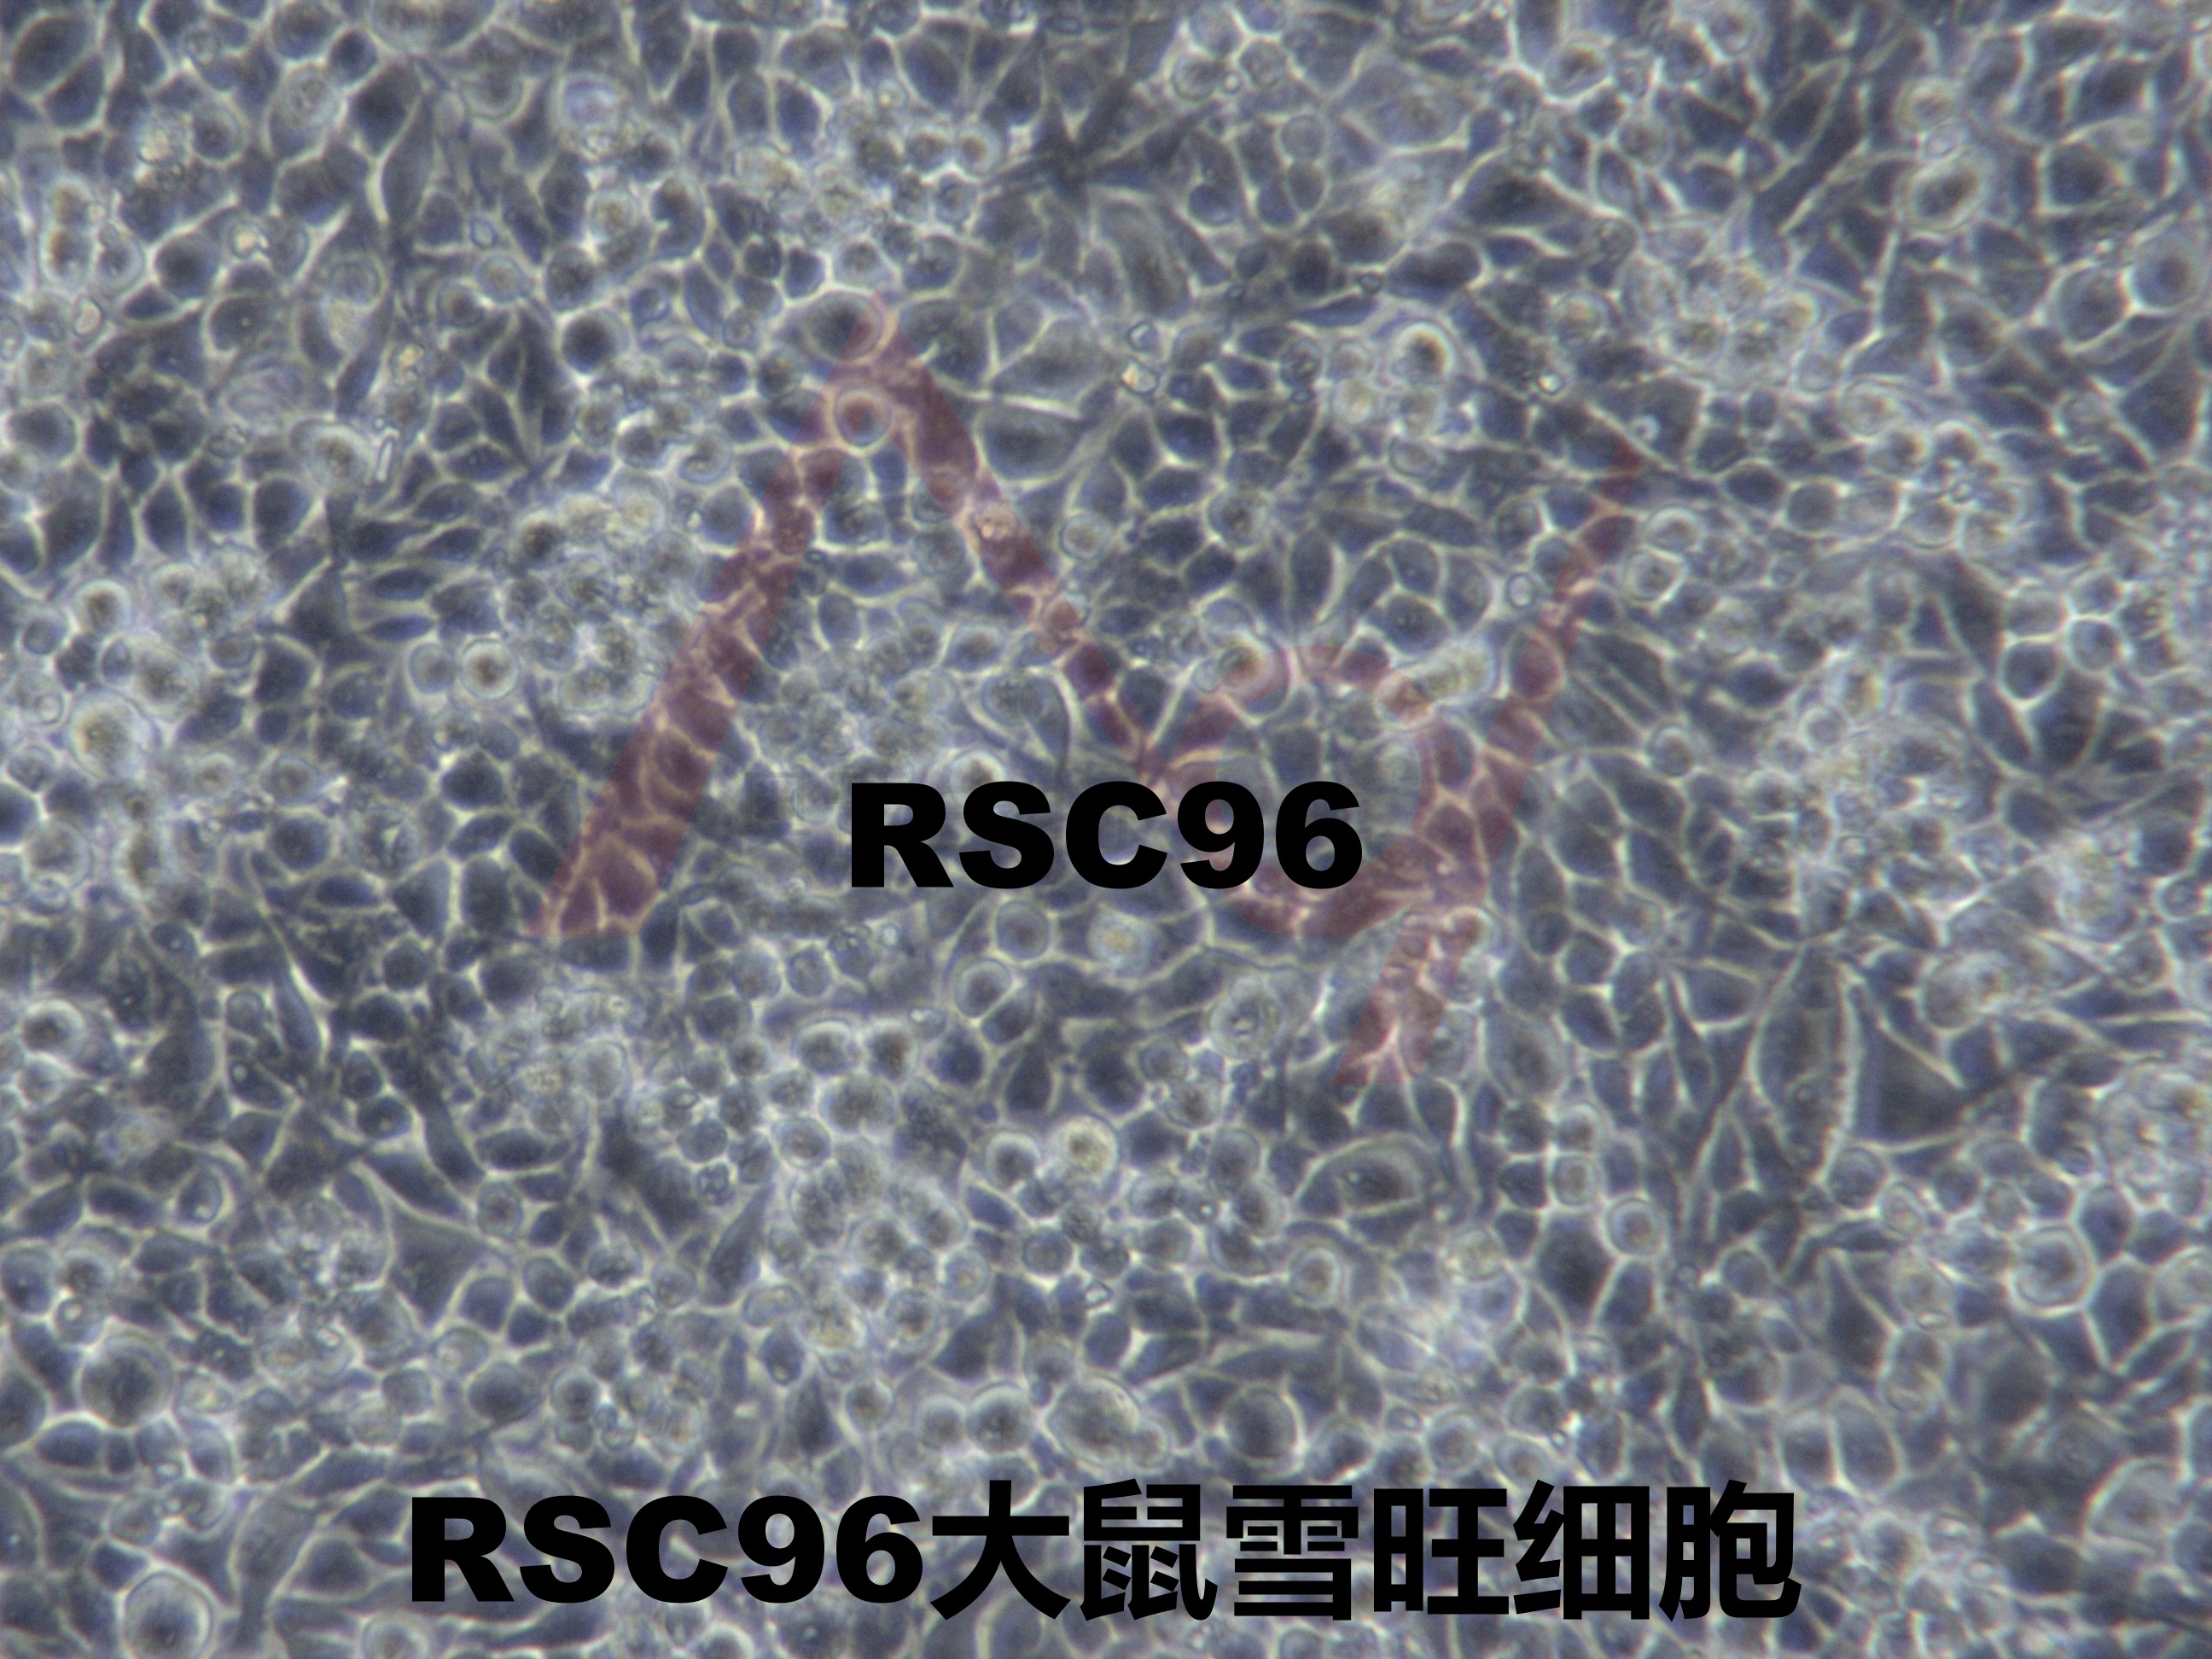 RSC96【Rsc96; RSC 96; RSC-96】大鼠雪旺细胞